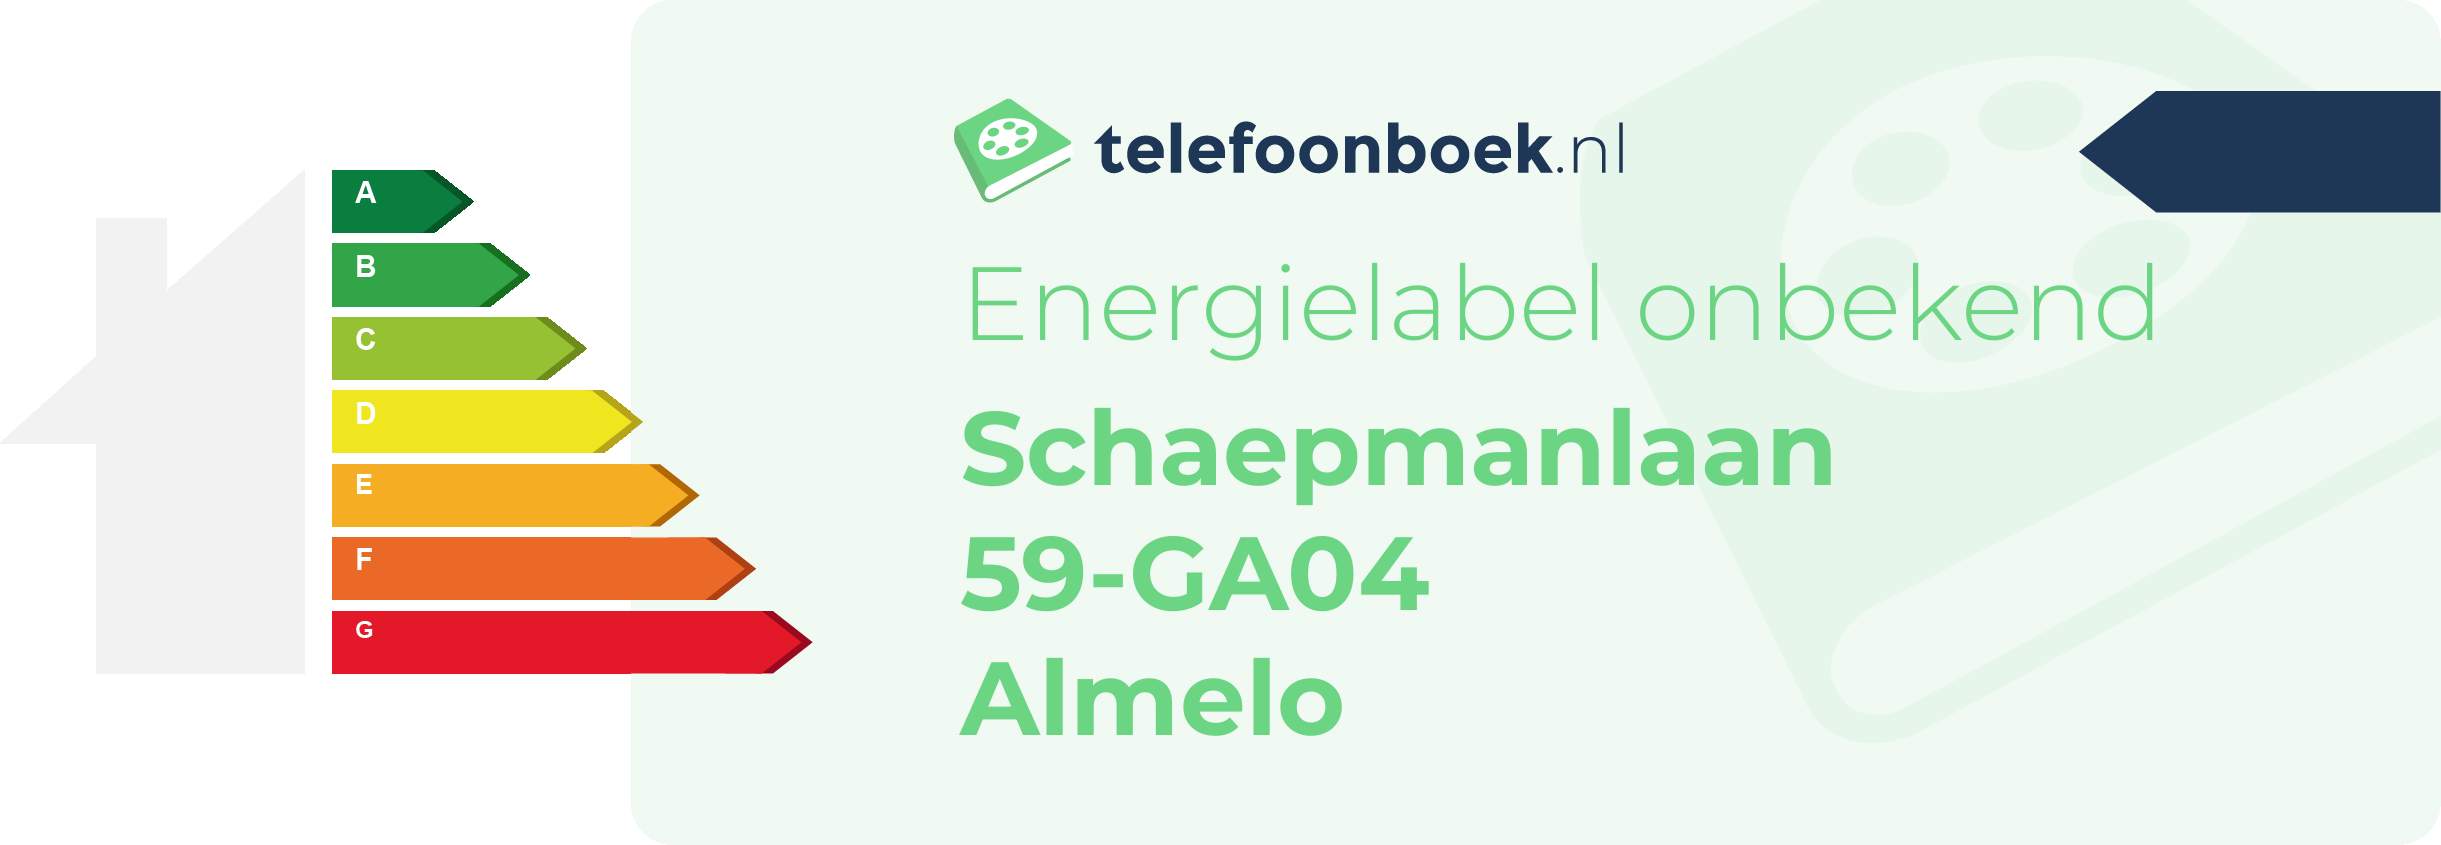 Energielabel Schaepmanlaan 59-GA04 Almelo